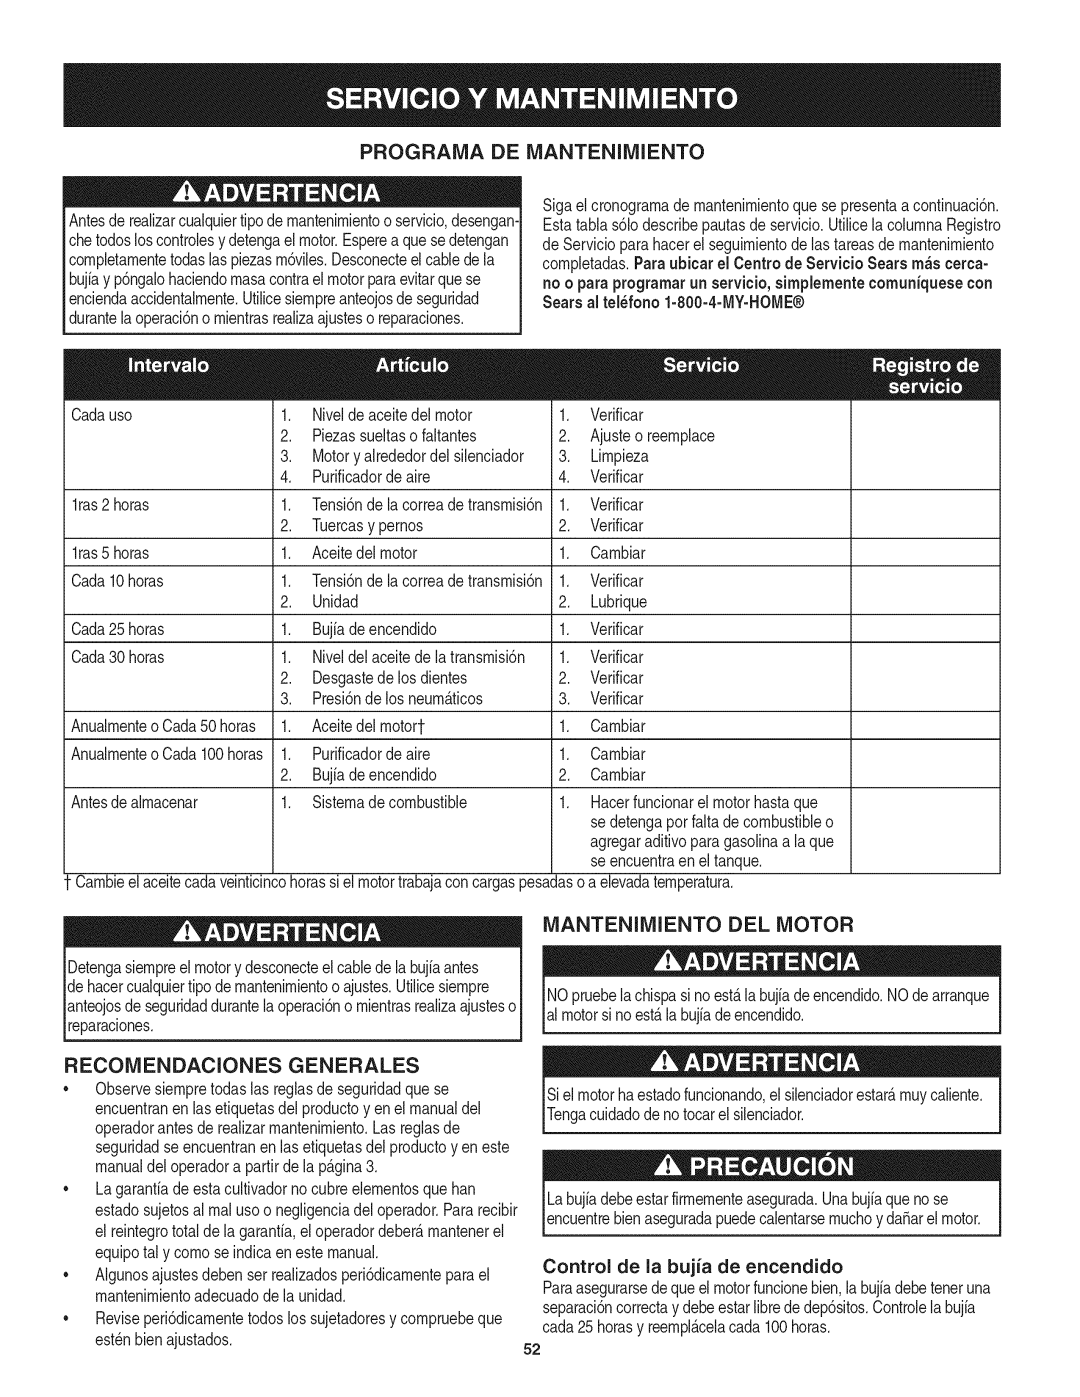 Craftsman 247.29931 manual Programa De Mantenimiento, Mantenimiento Del Motor, Recomendaciones Generales 